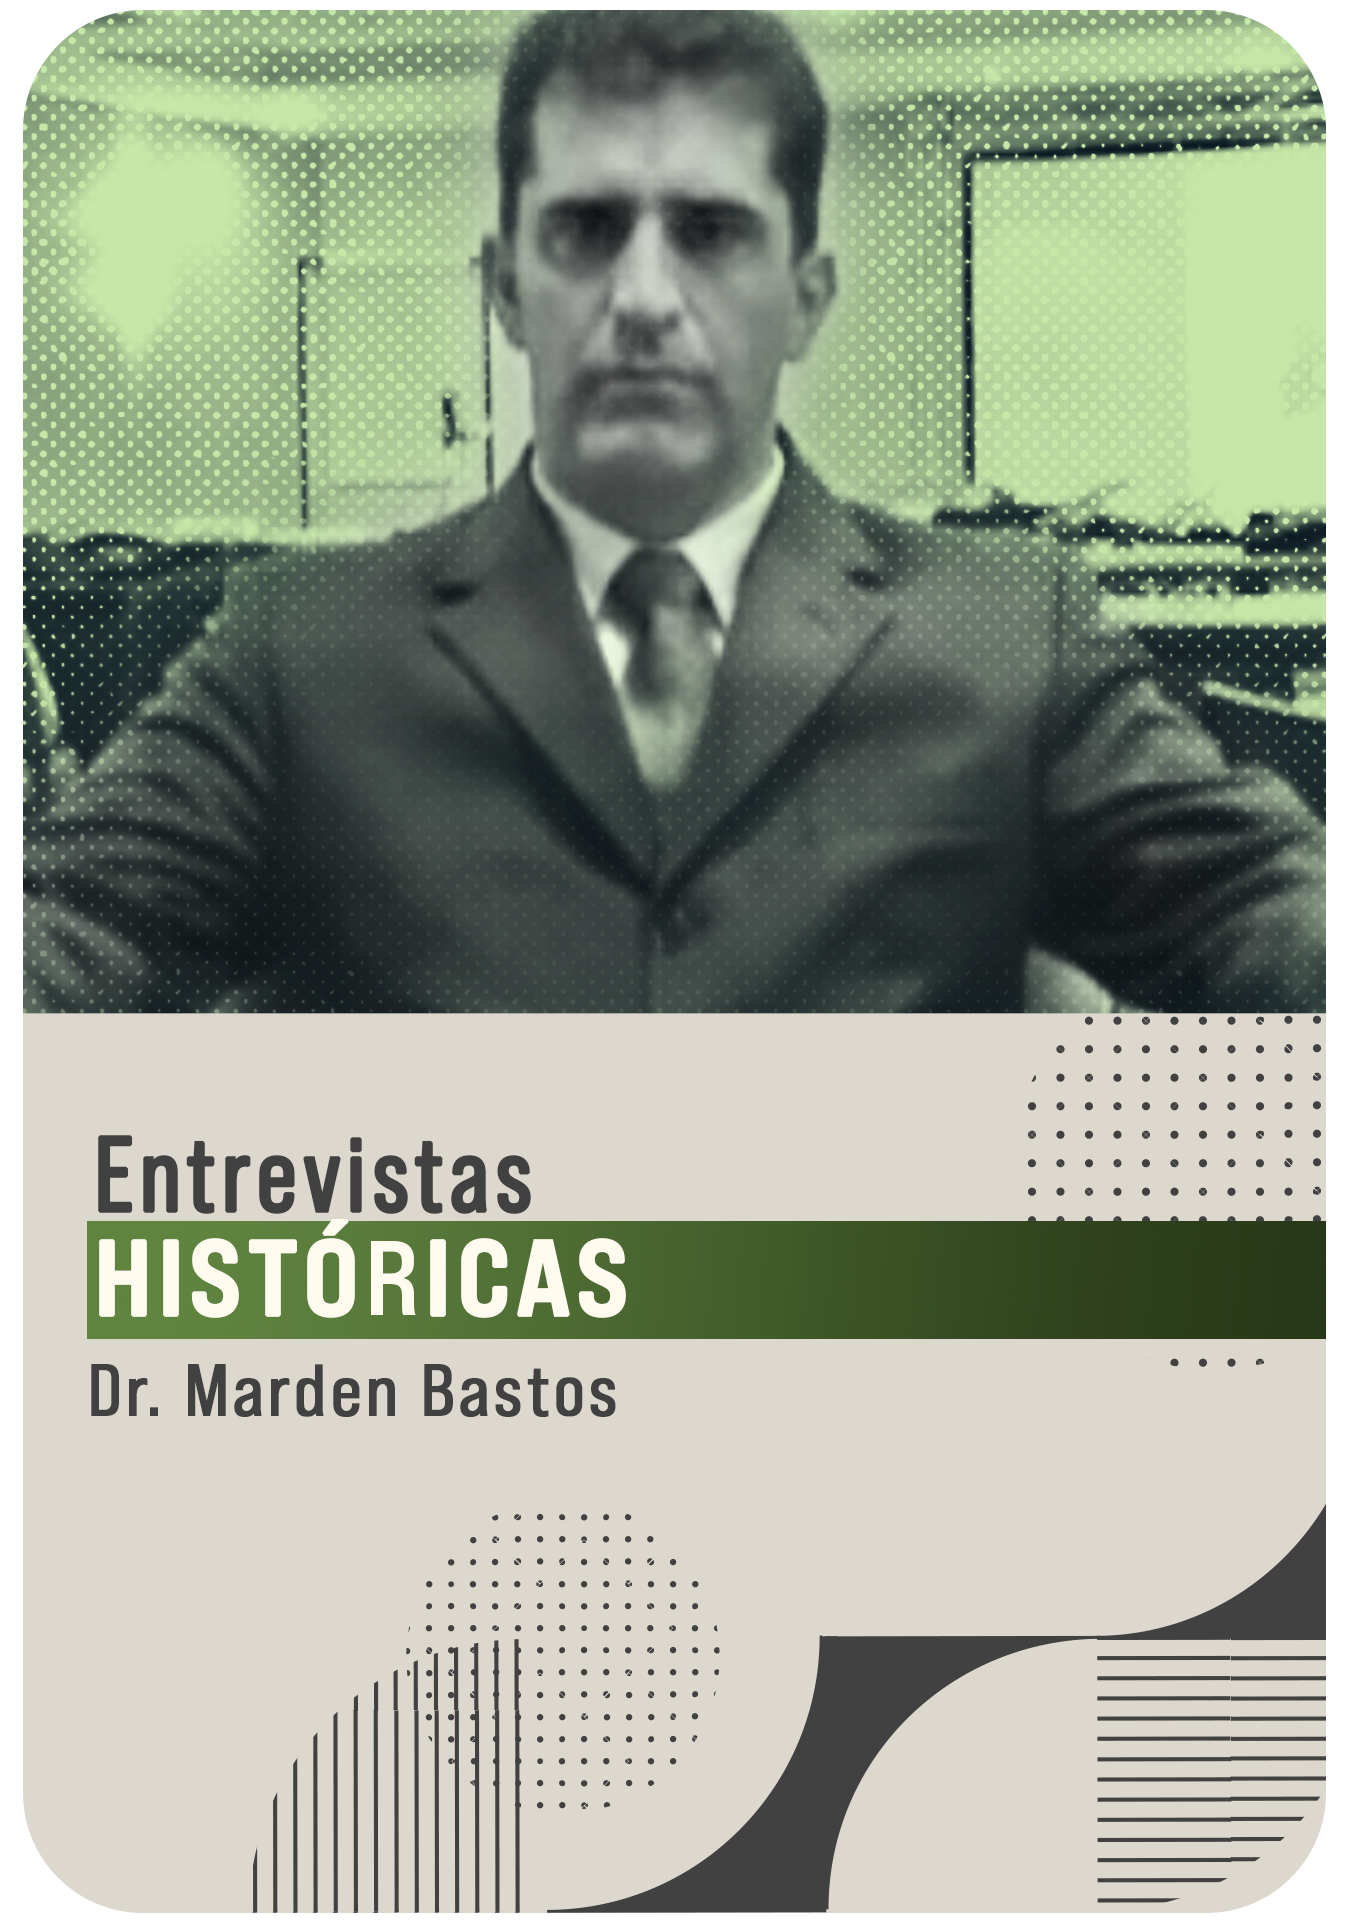 Dr. Marden Oliveira Bastos